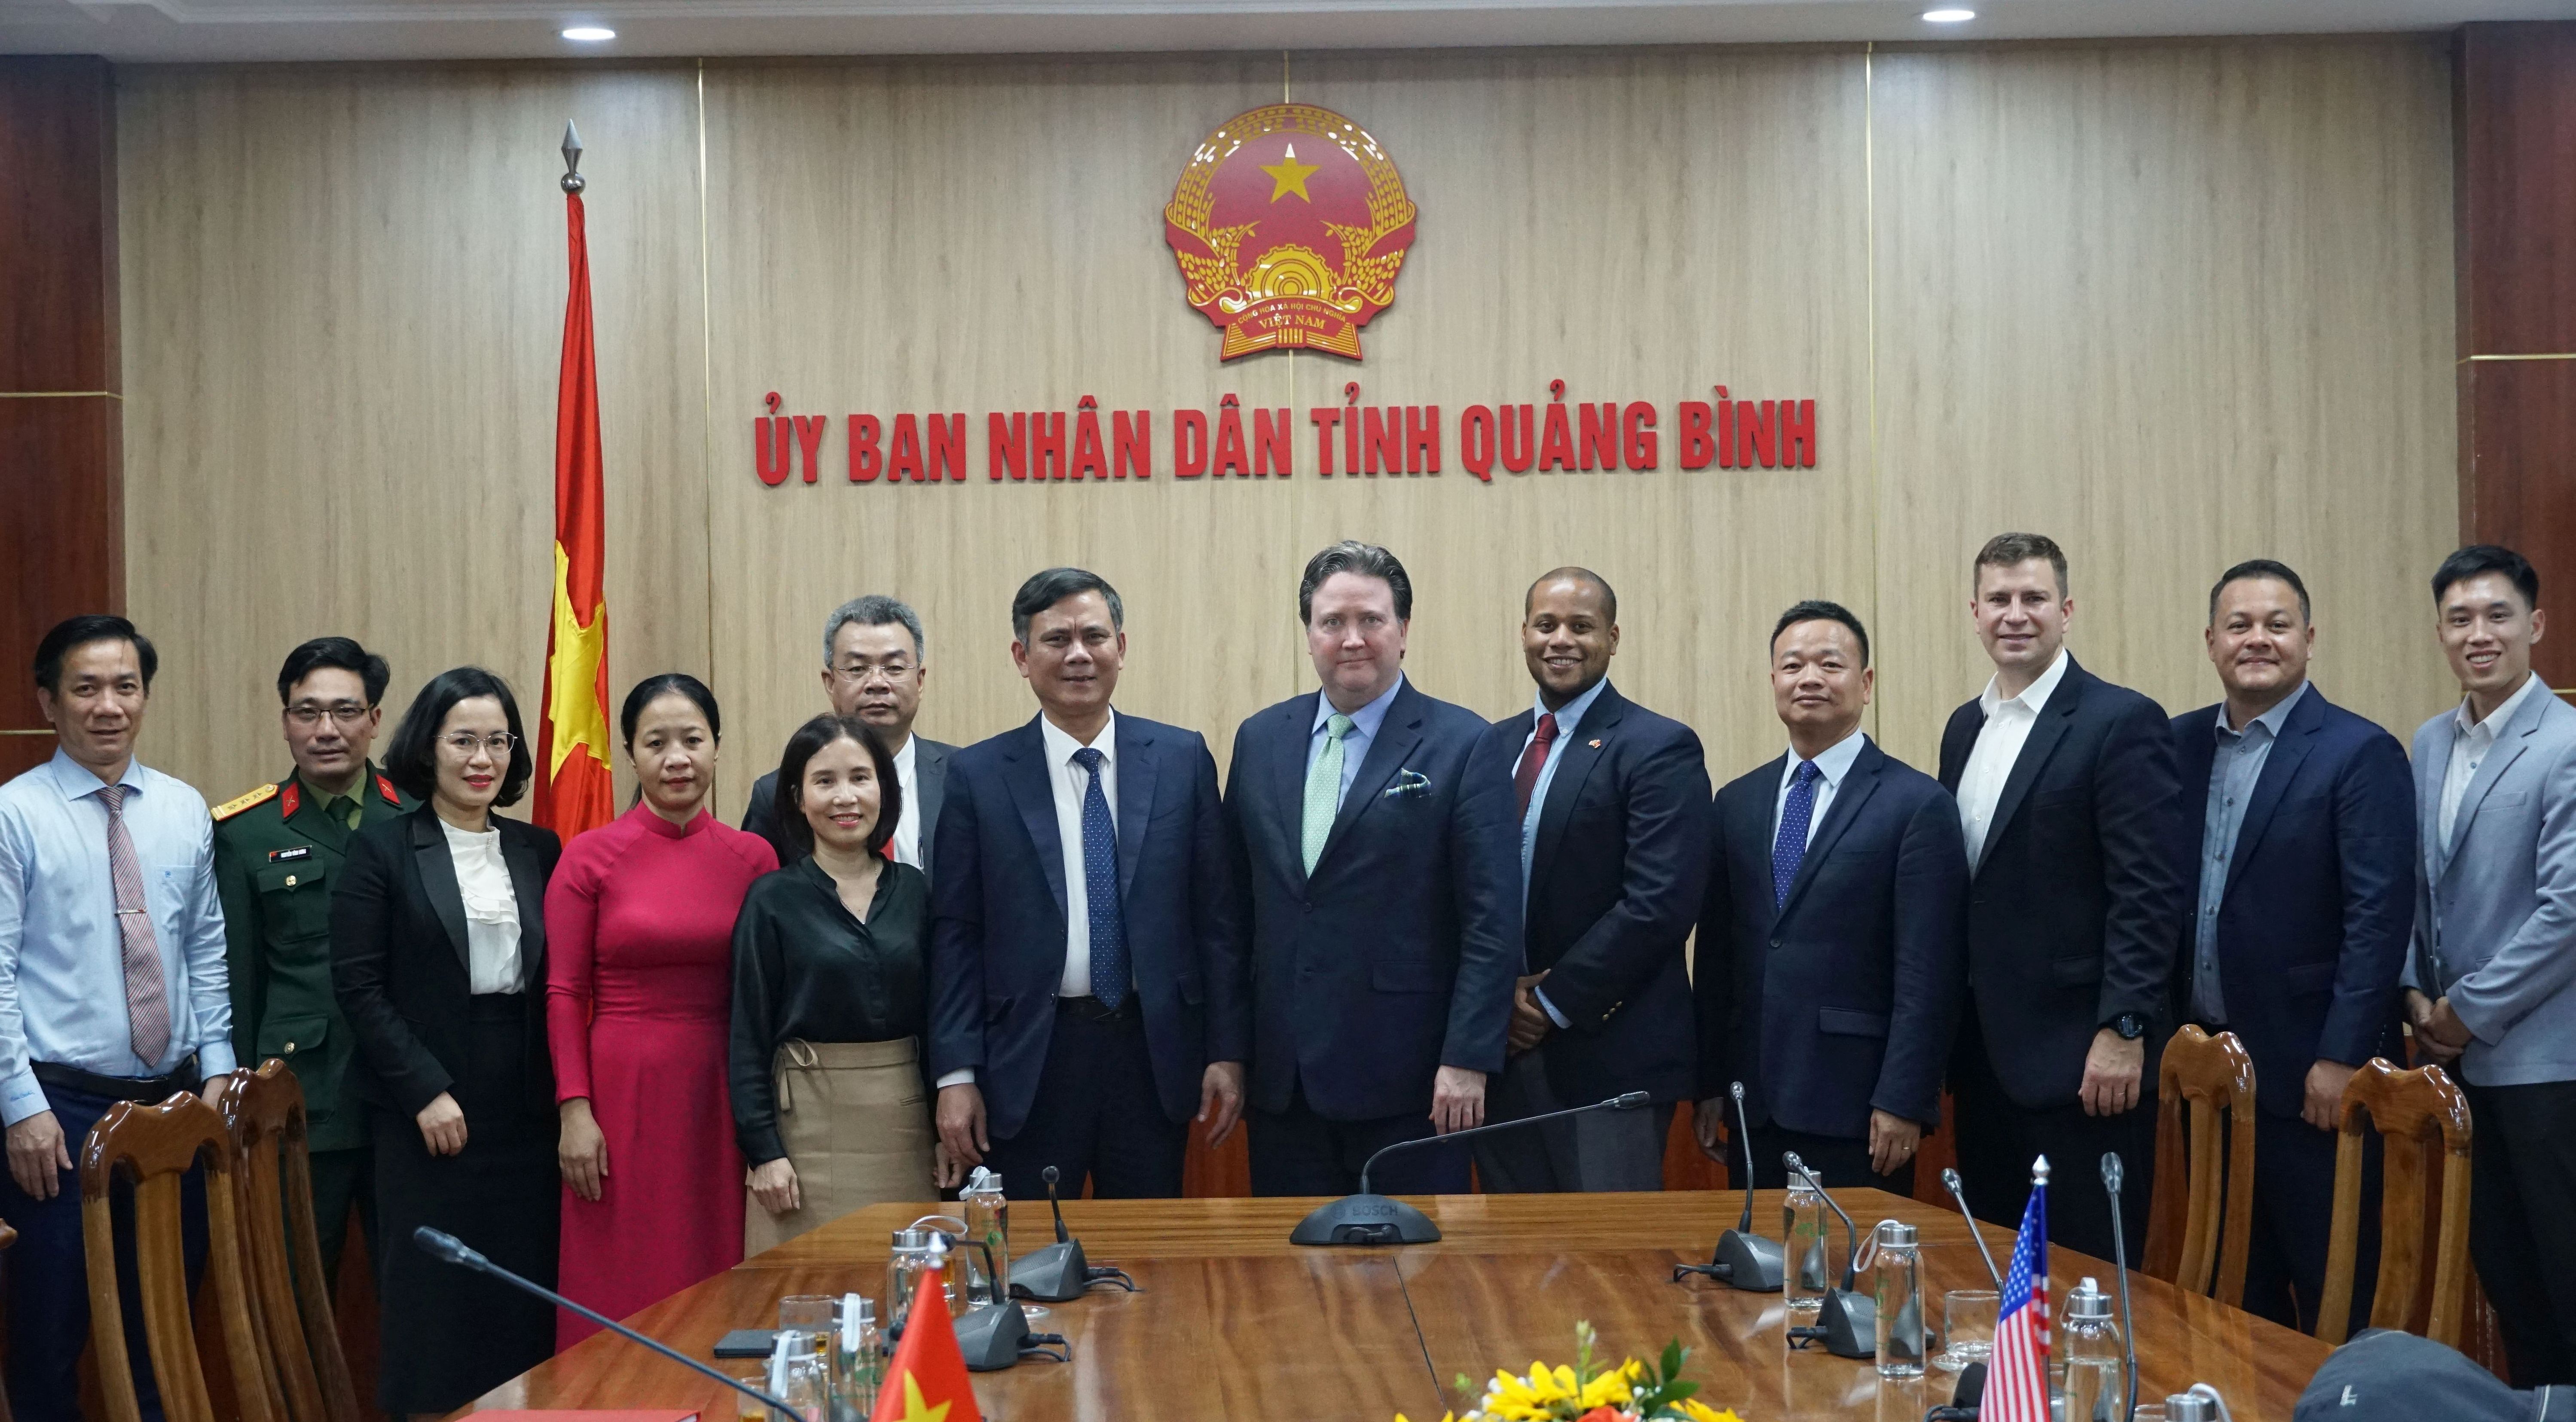 Đoàn công tác của Đại sứ quán Hoa Kỳ tại Việt Nam chụp ảnh lưu niệm với đồng chí Chủ tịch UBND tỉnh Trần Thắng và các đại biểu.